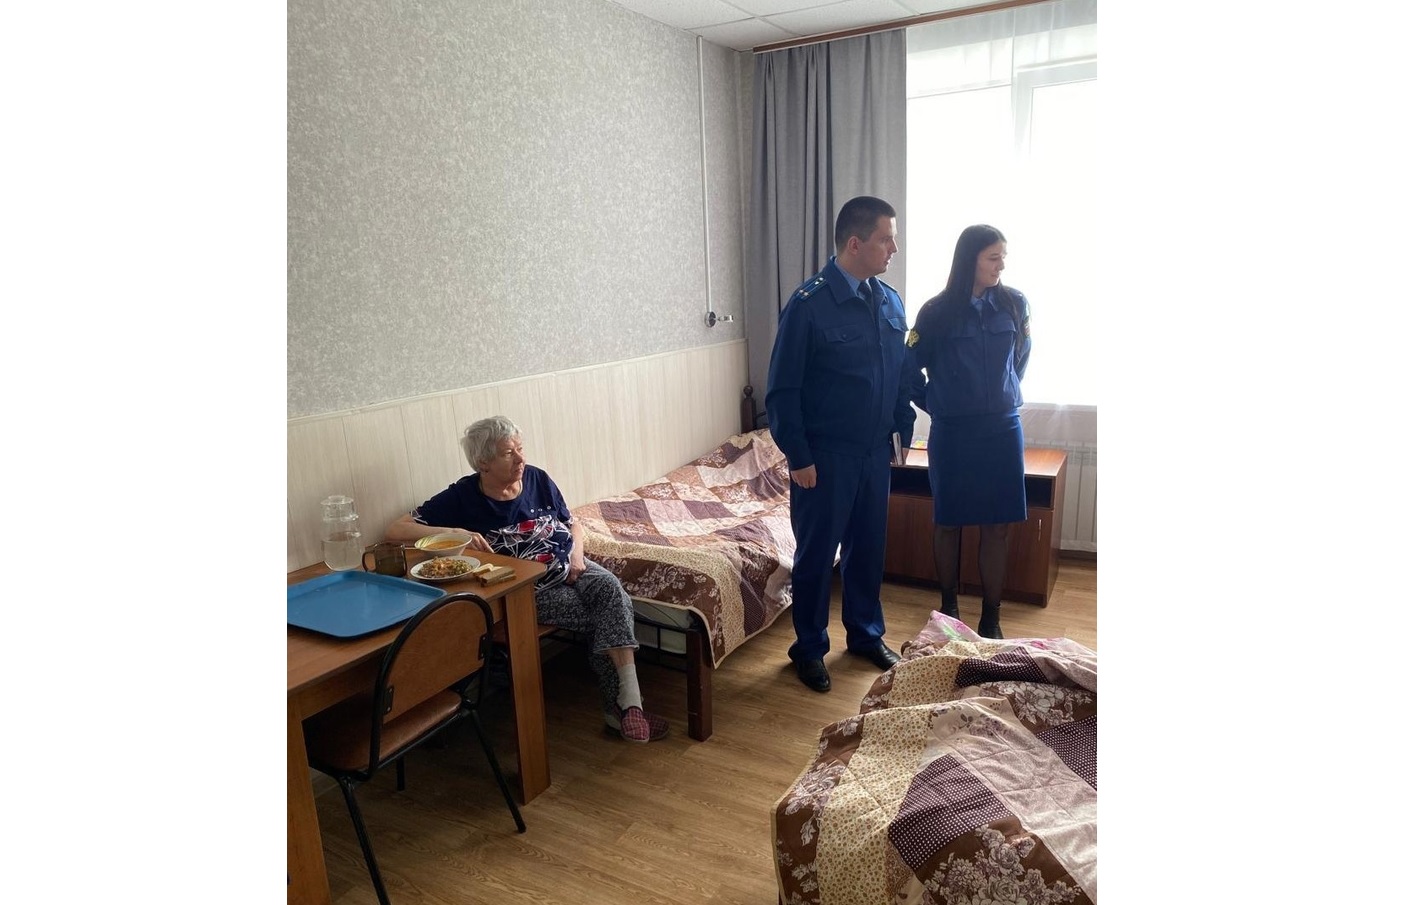 Следком проведет проверку по факту нарушения прав инвалидов в доме-интернате в Кольчугинском районе